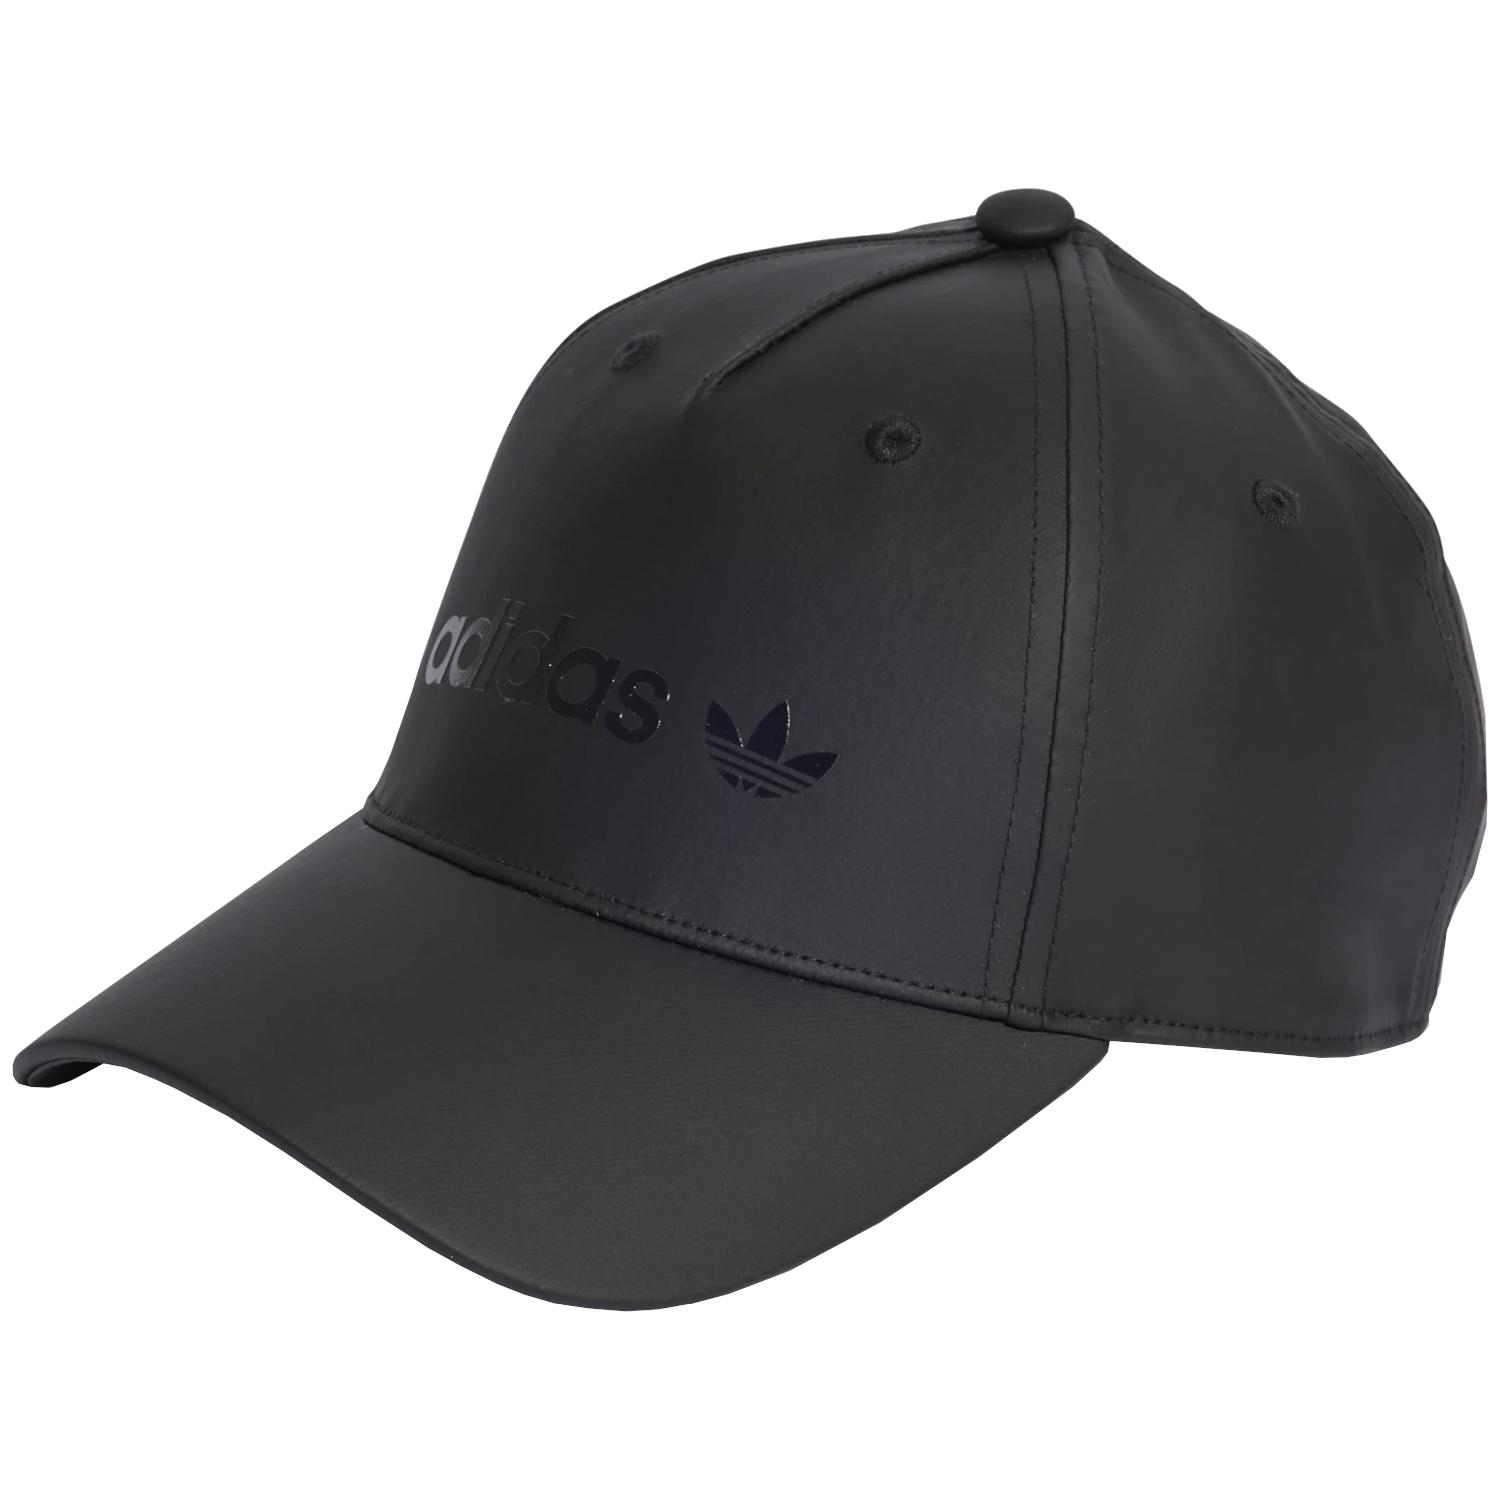 Adidas Originals adidas Satin Baseball Cap, Unisex black Cap